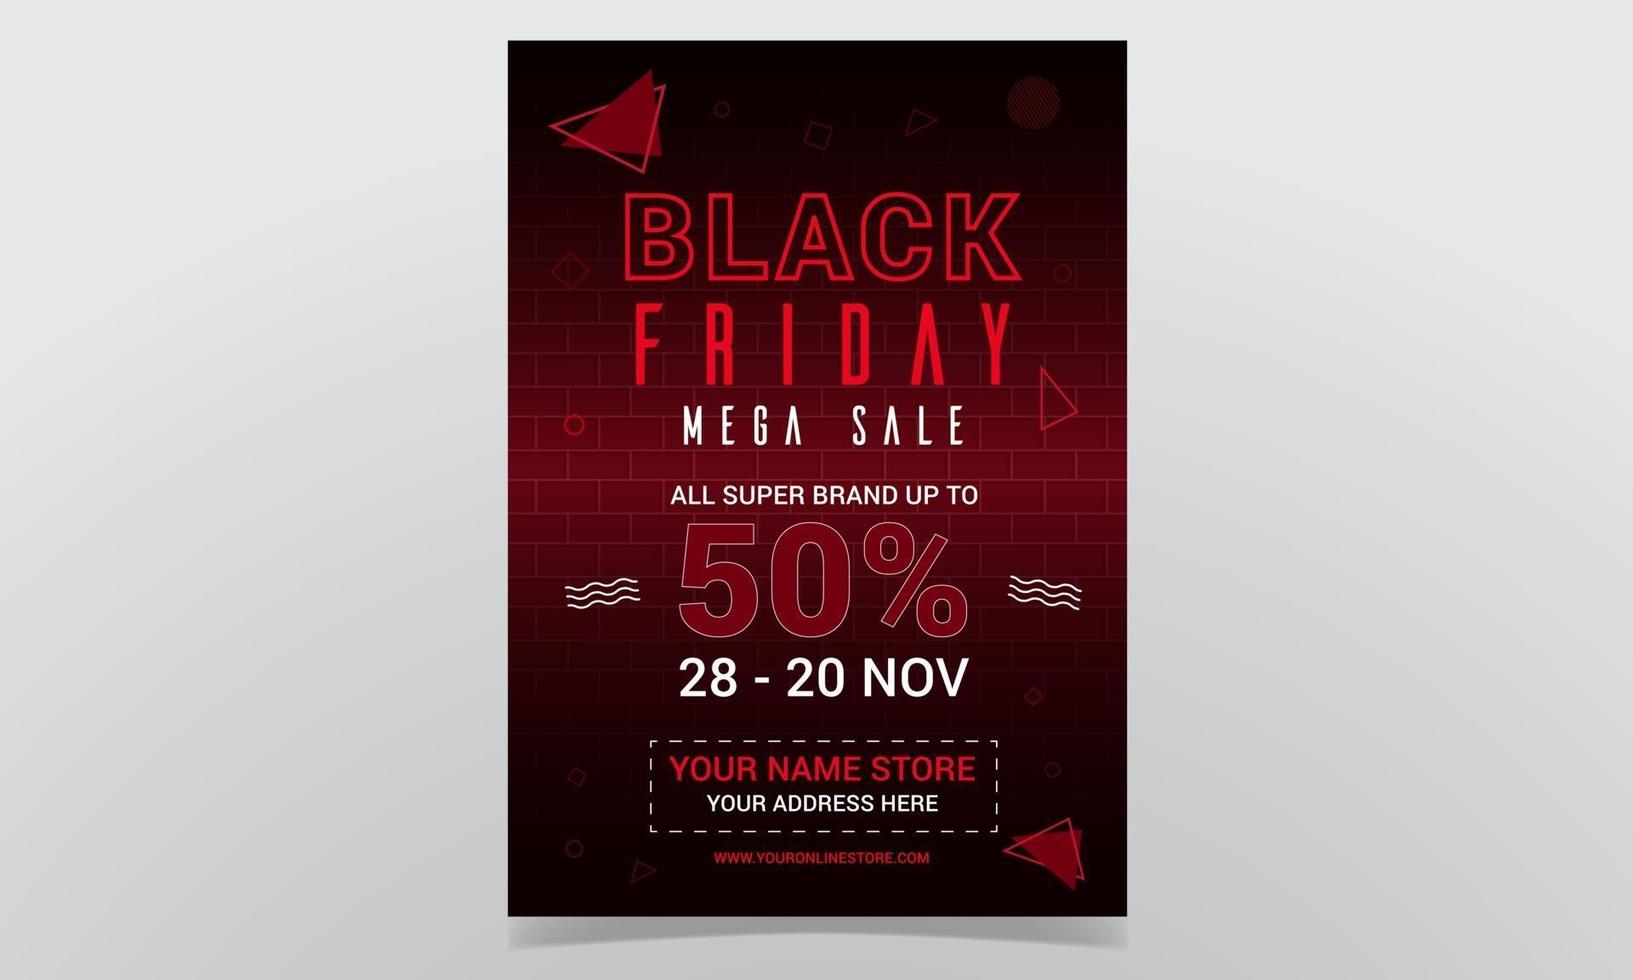 Black Friday Mega Sale Poster Design vector